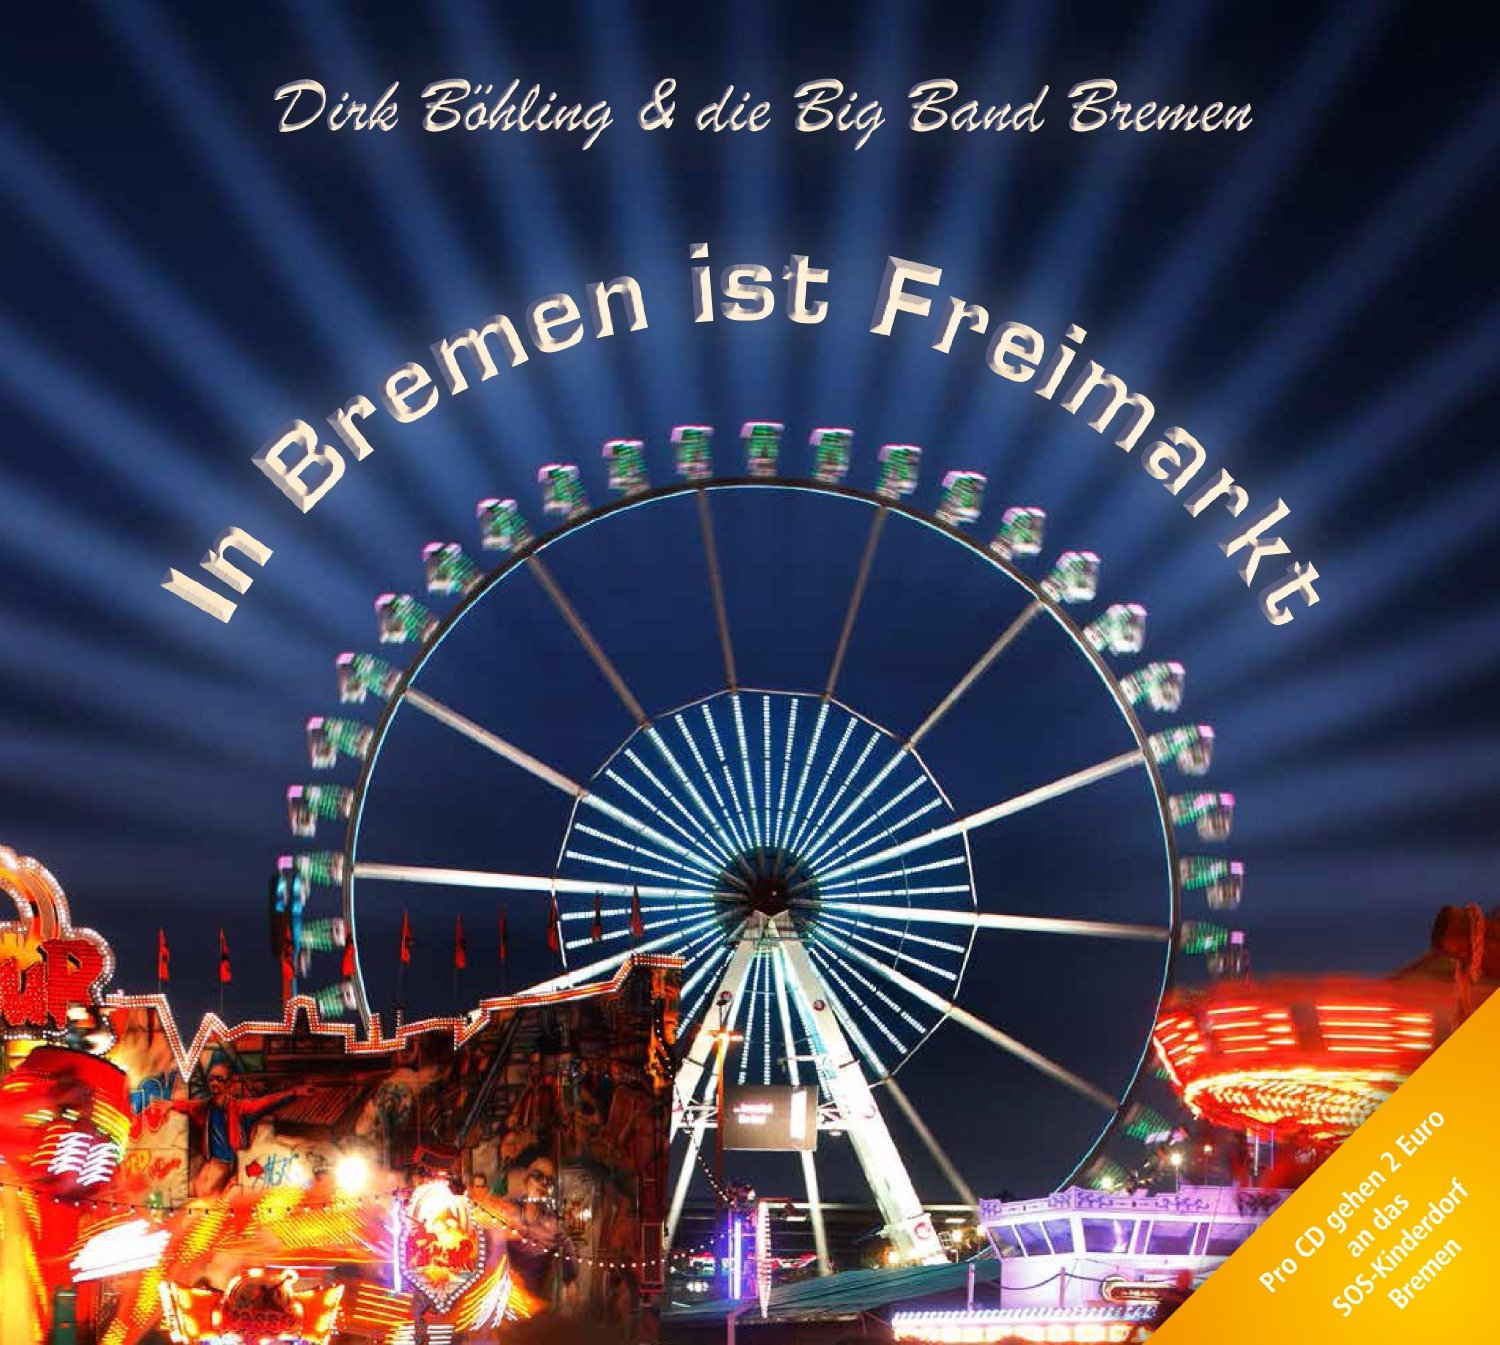 CD "In Bremen ist Freimarkt"